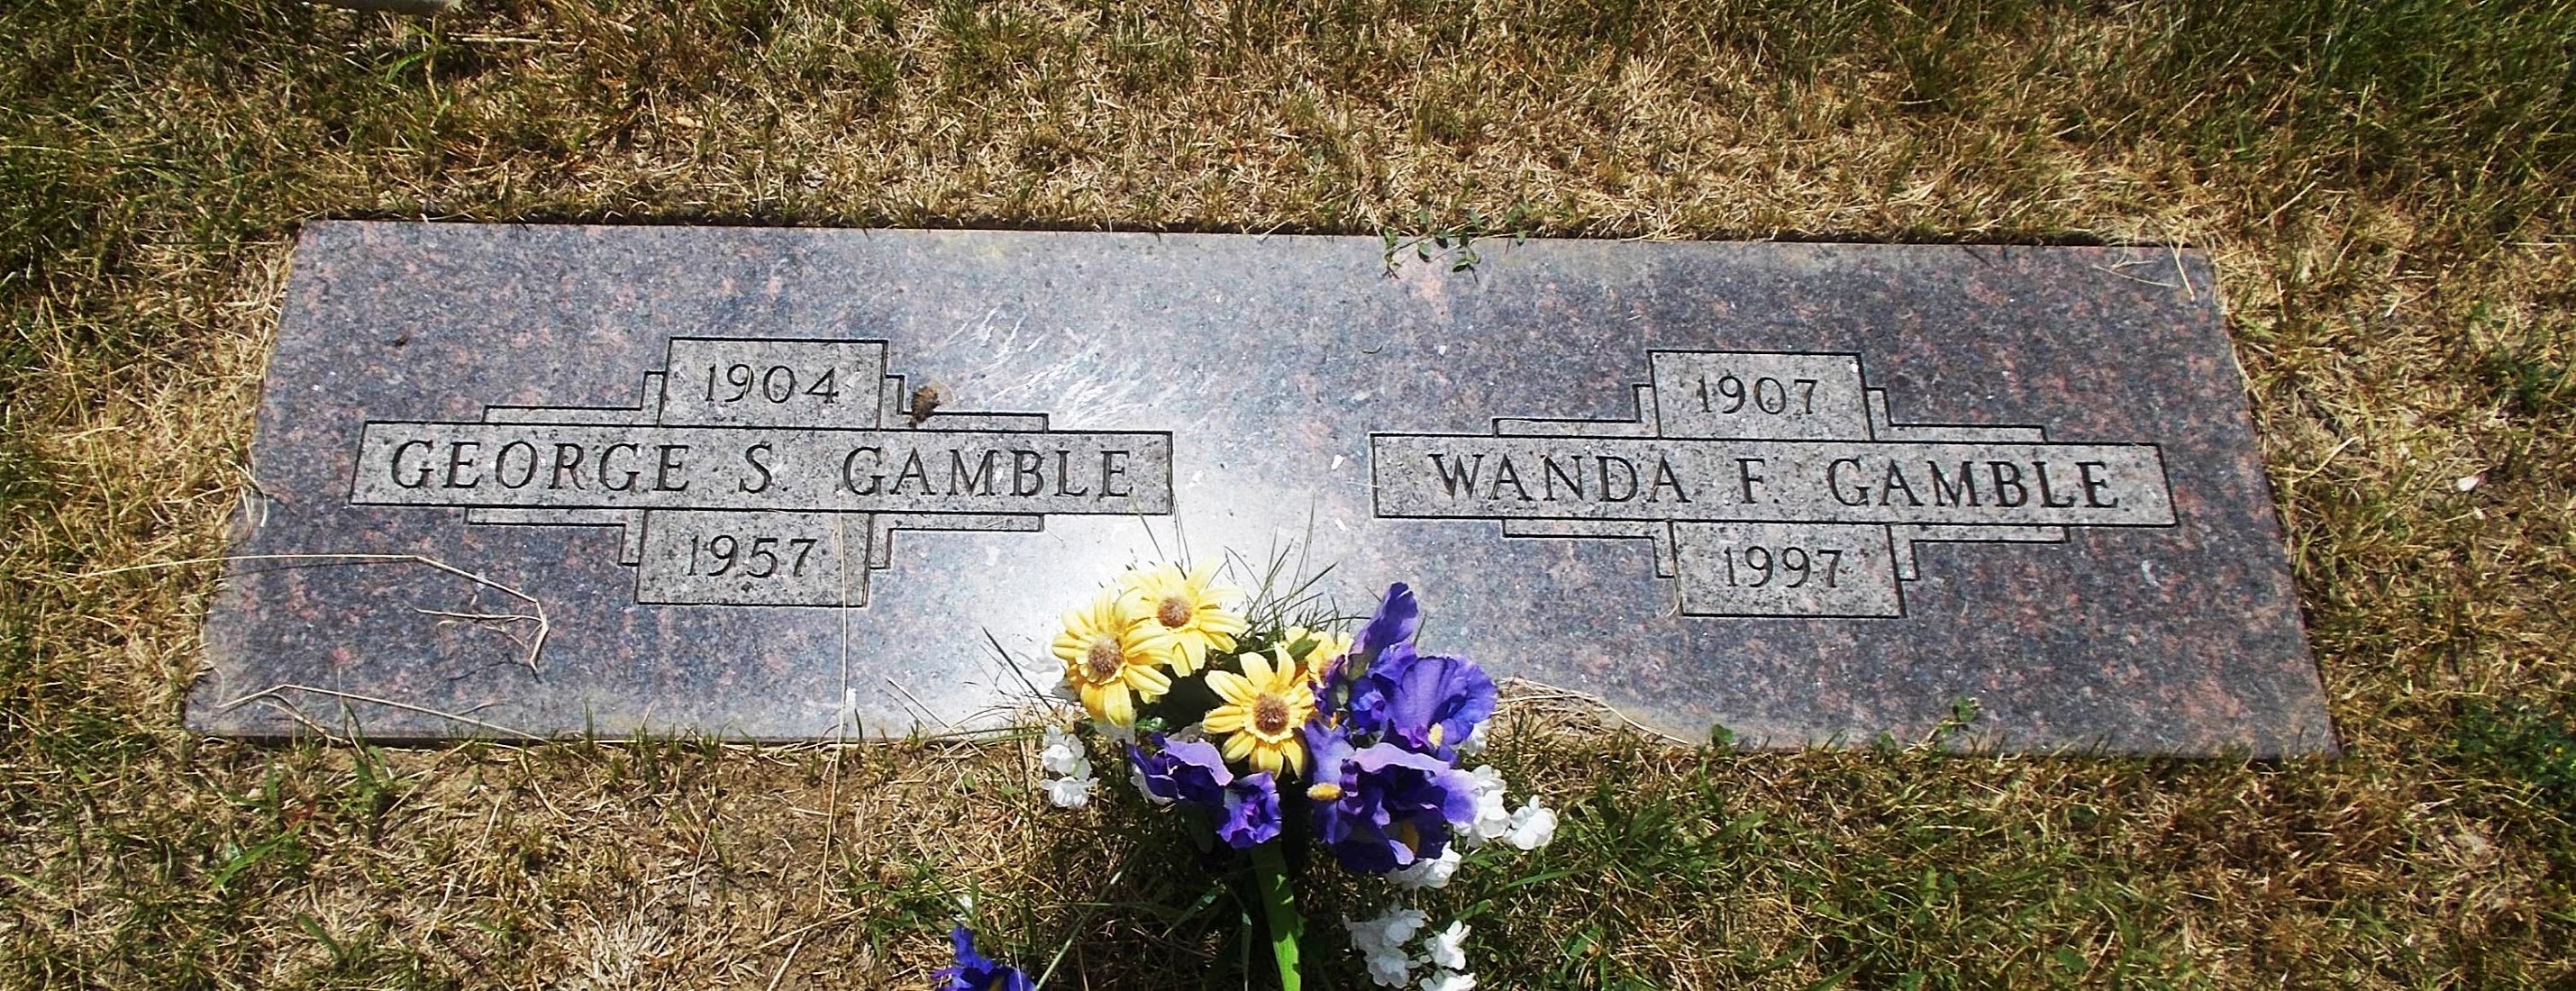 Wanda F Gamble